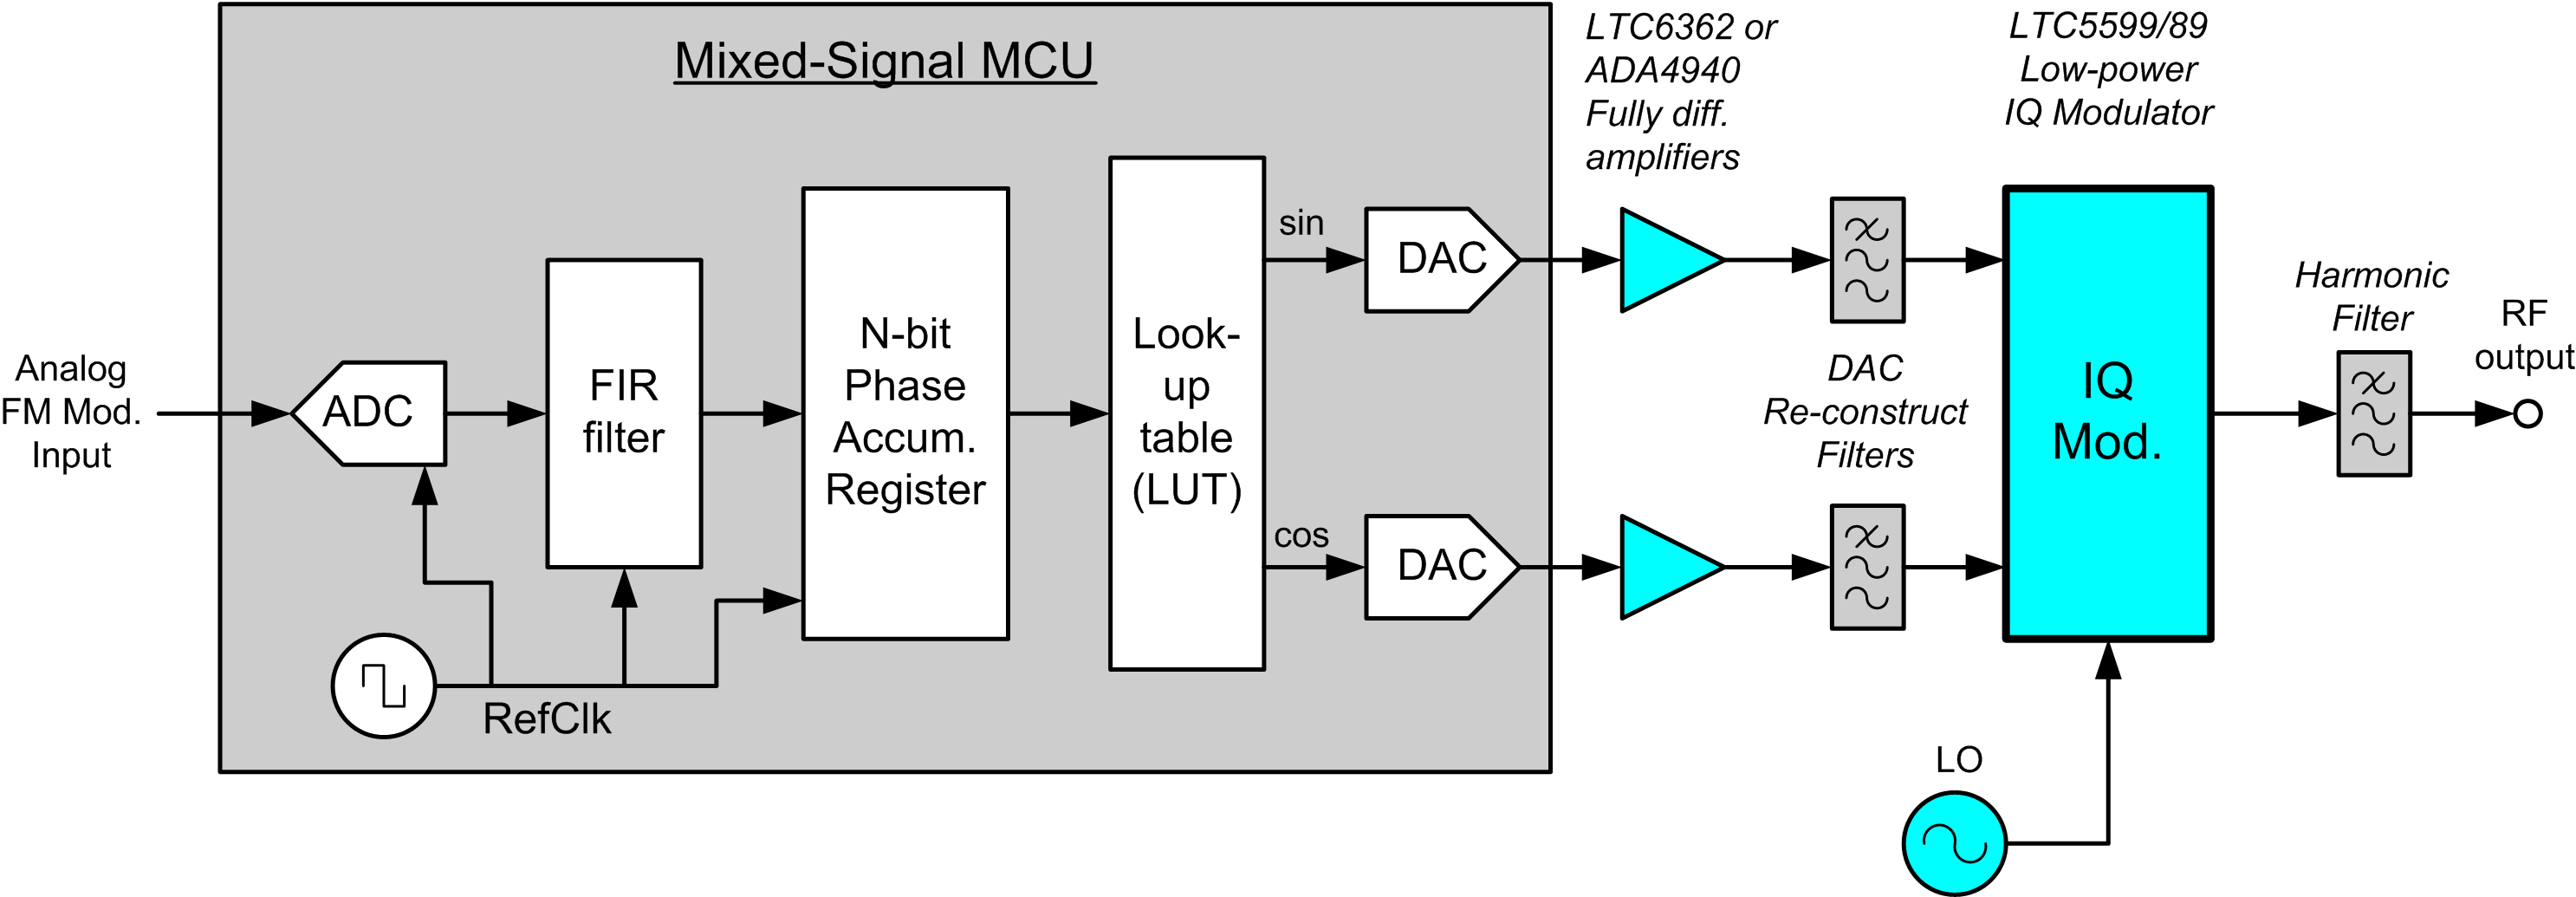 用于解决FM调制低功耗方案的IQ调制器的精度和线性介绍